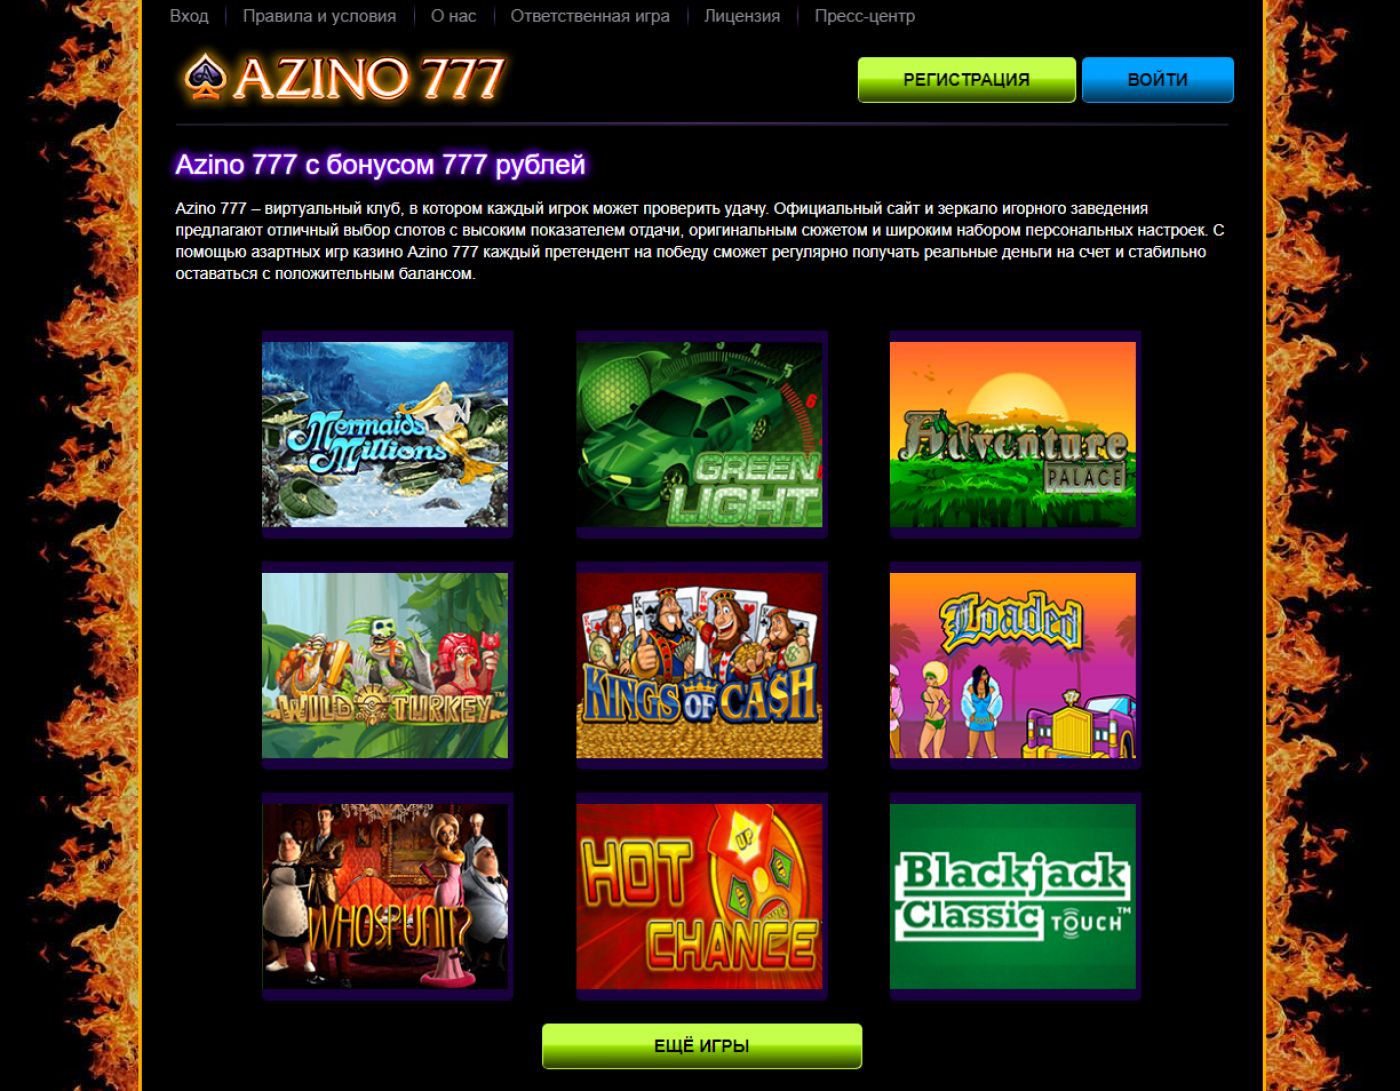 Клуб azino777 официальный рейтинг слотов рф мобильное казино для iphone